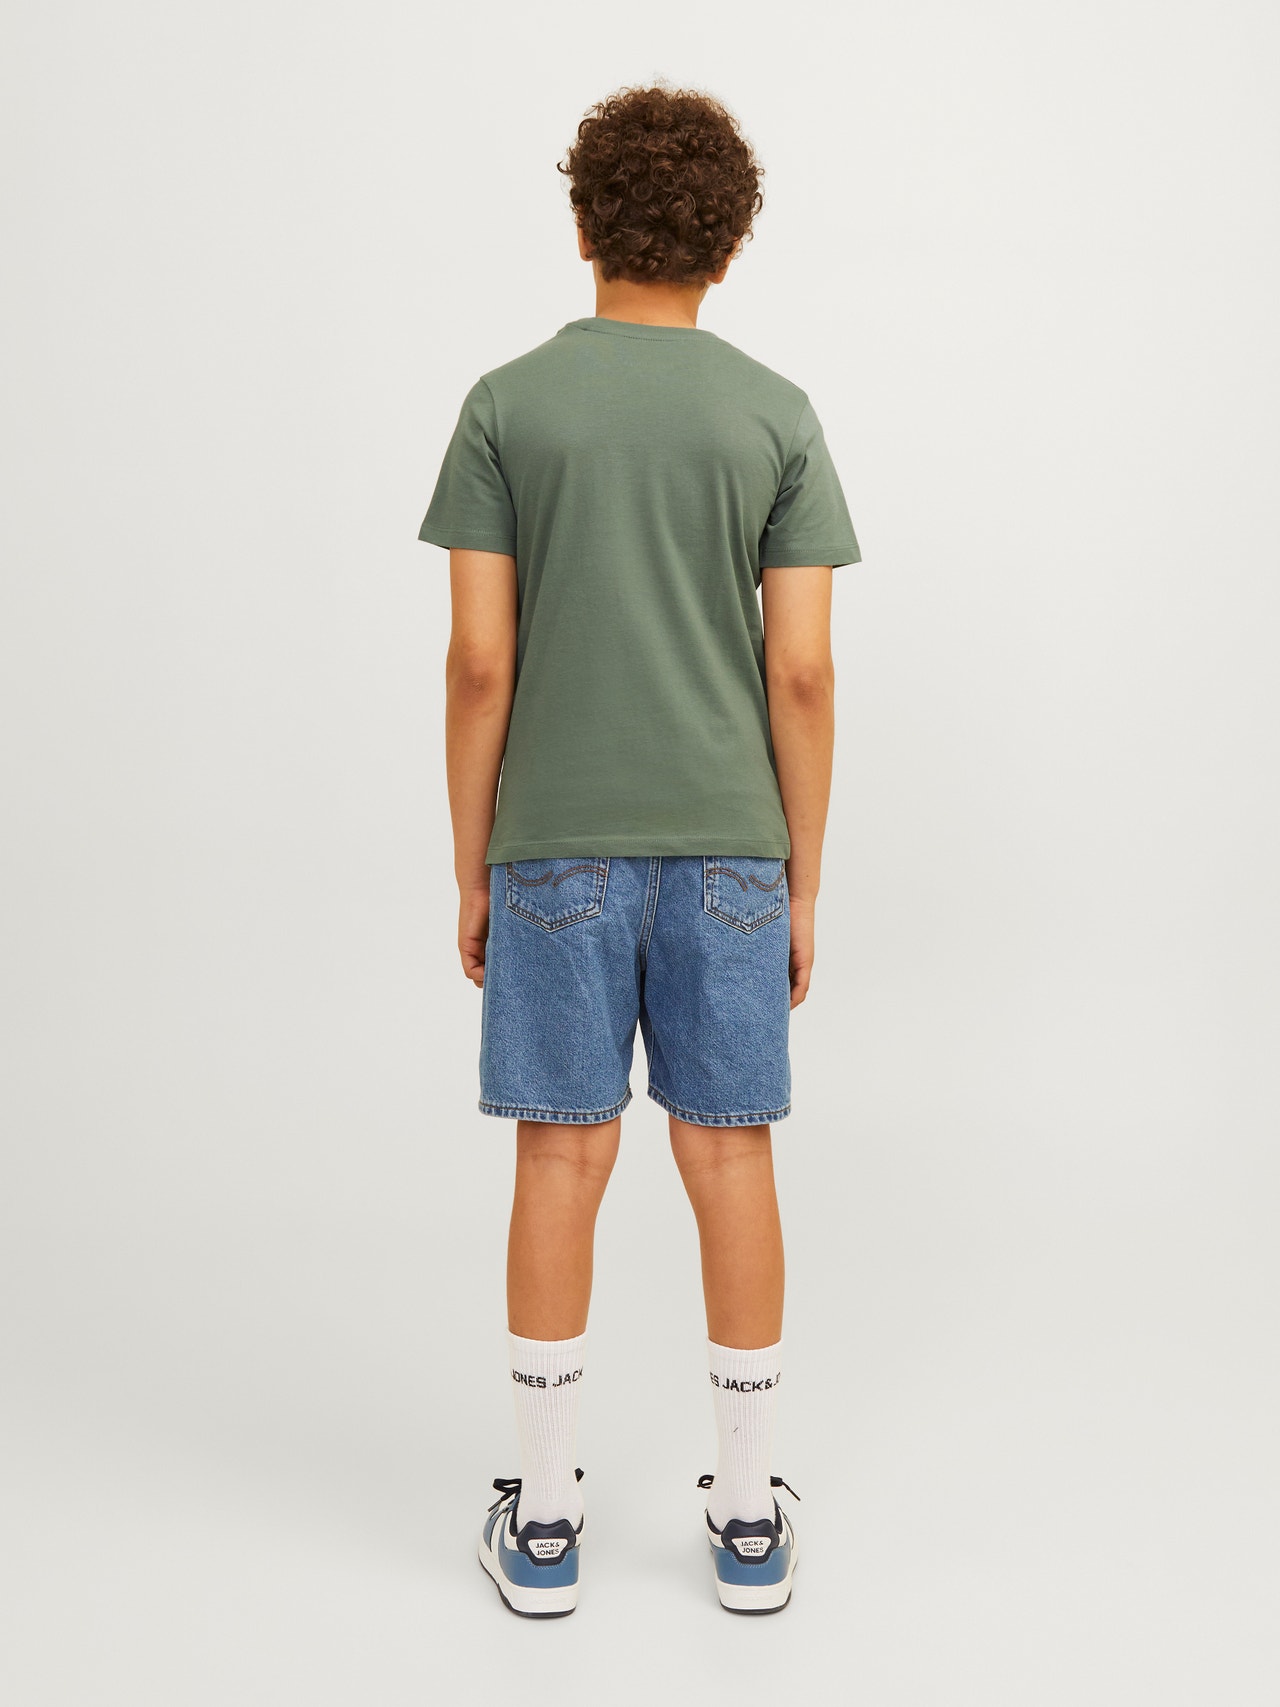 Jack & Jones T-shirt Imprimé Pour les garçons -Laurel Wreath - 12256938